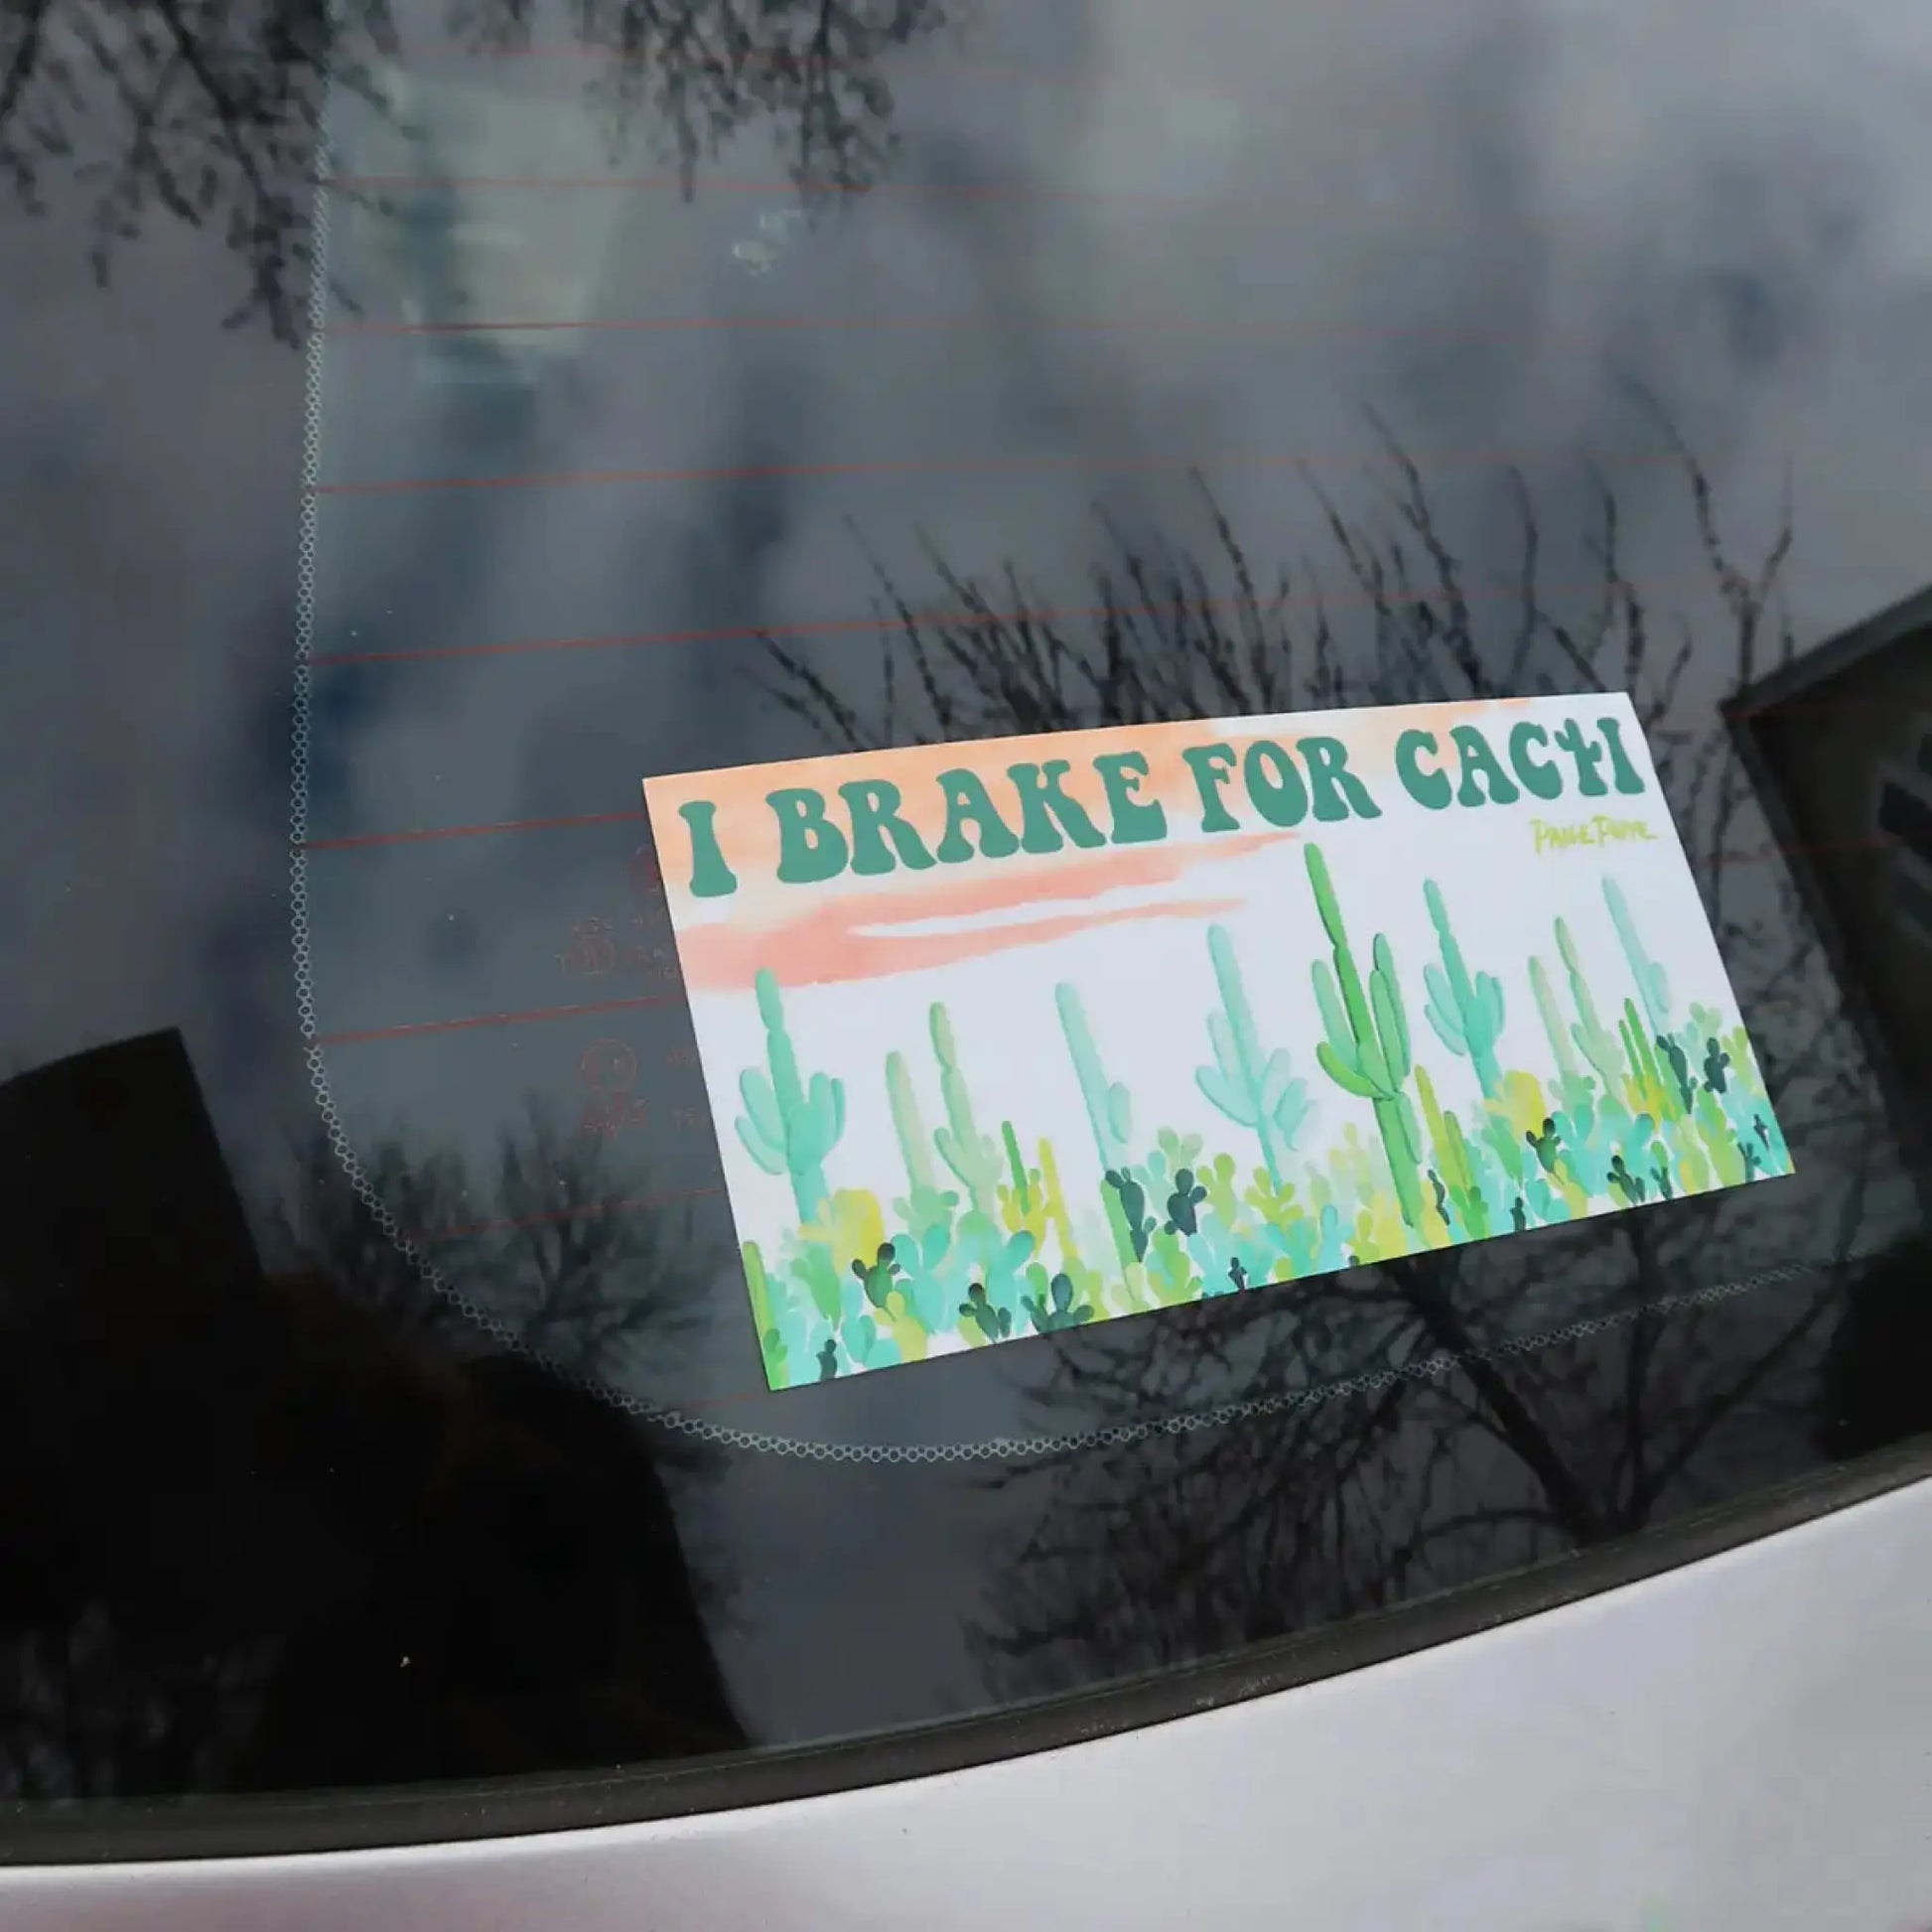 I Brake for Cacti bumper sticker - Sticker